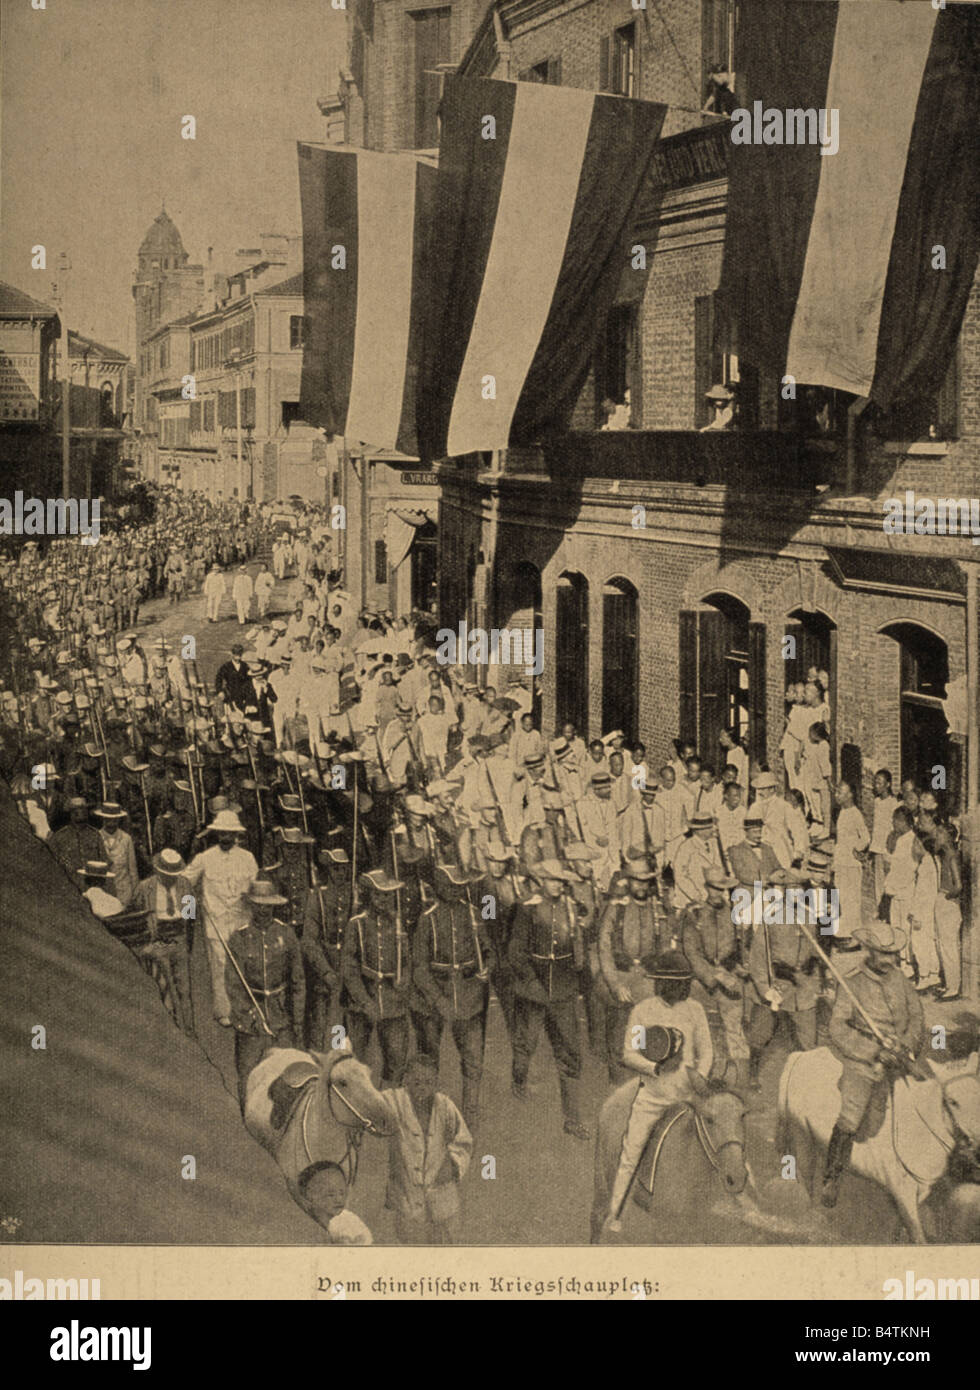 Geografia / viaggio, Cina, Boxer Rebellion 1900, arrivo della fanteria dell'Asia orientale 1st a Shanghai, pubblicato in 'Die Woche' n° 43, 27.10.1900, Foto Stock